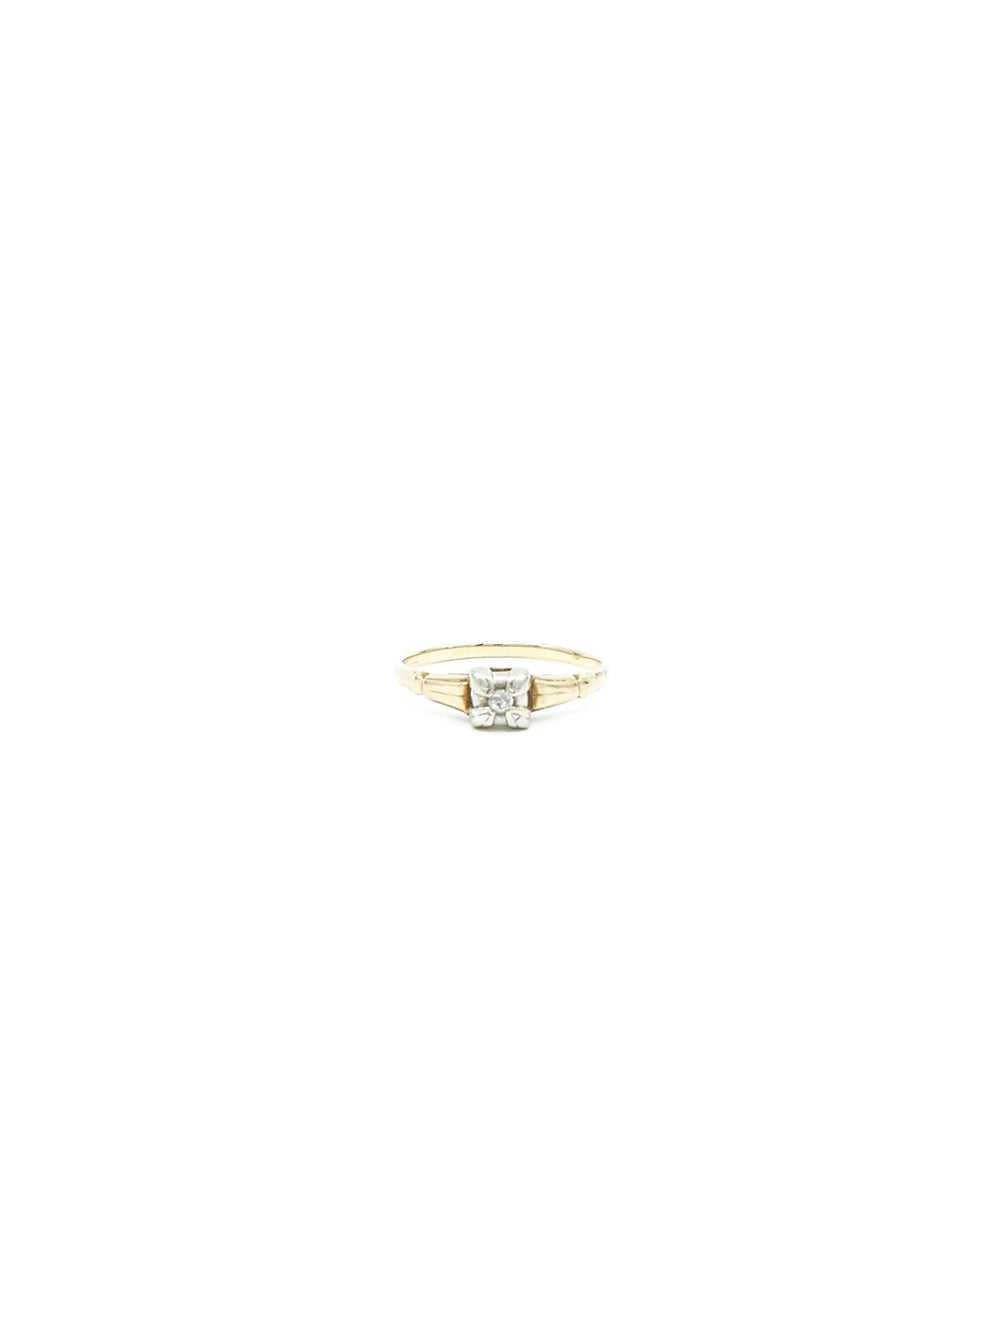 14K Gold Diamond Ring - image 2